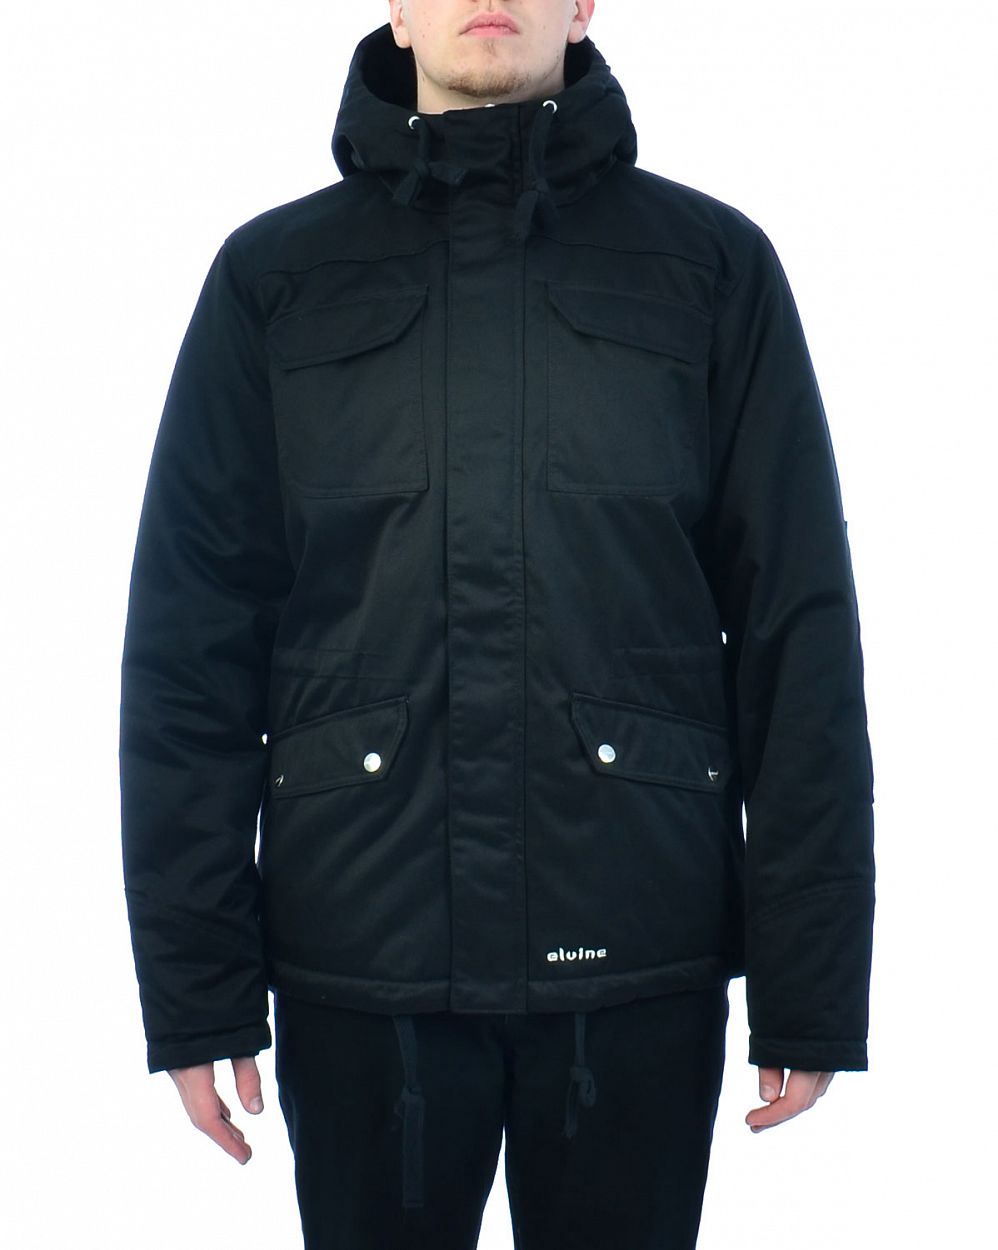 Куртка мужская теплая водостойкая Швеция Elvine Gabbe Black отзывы